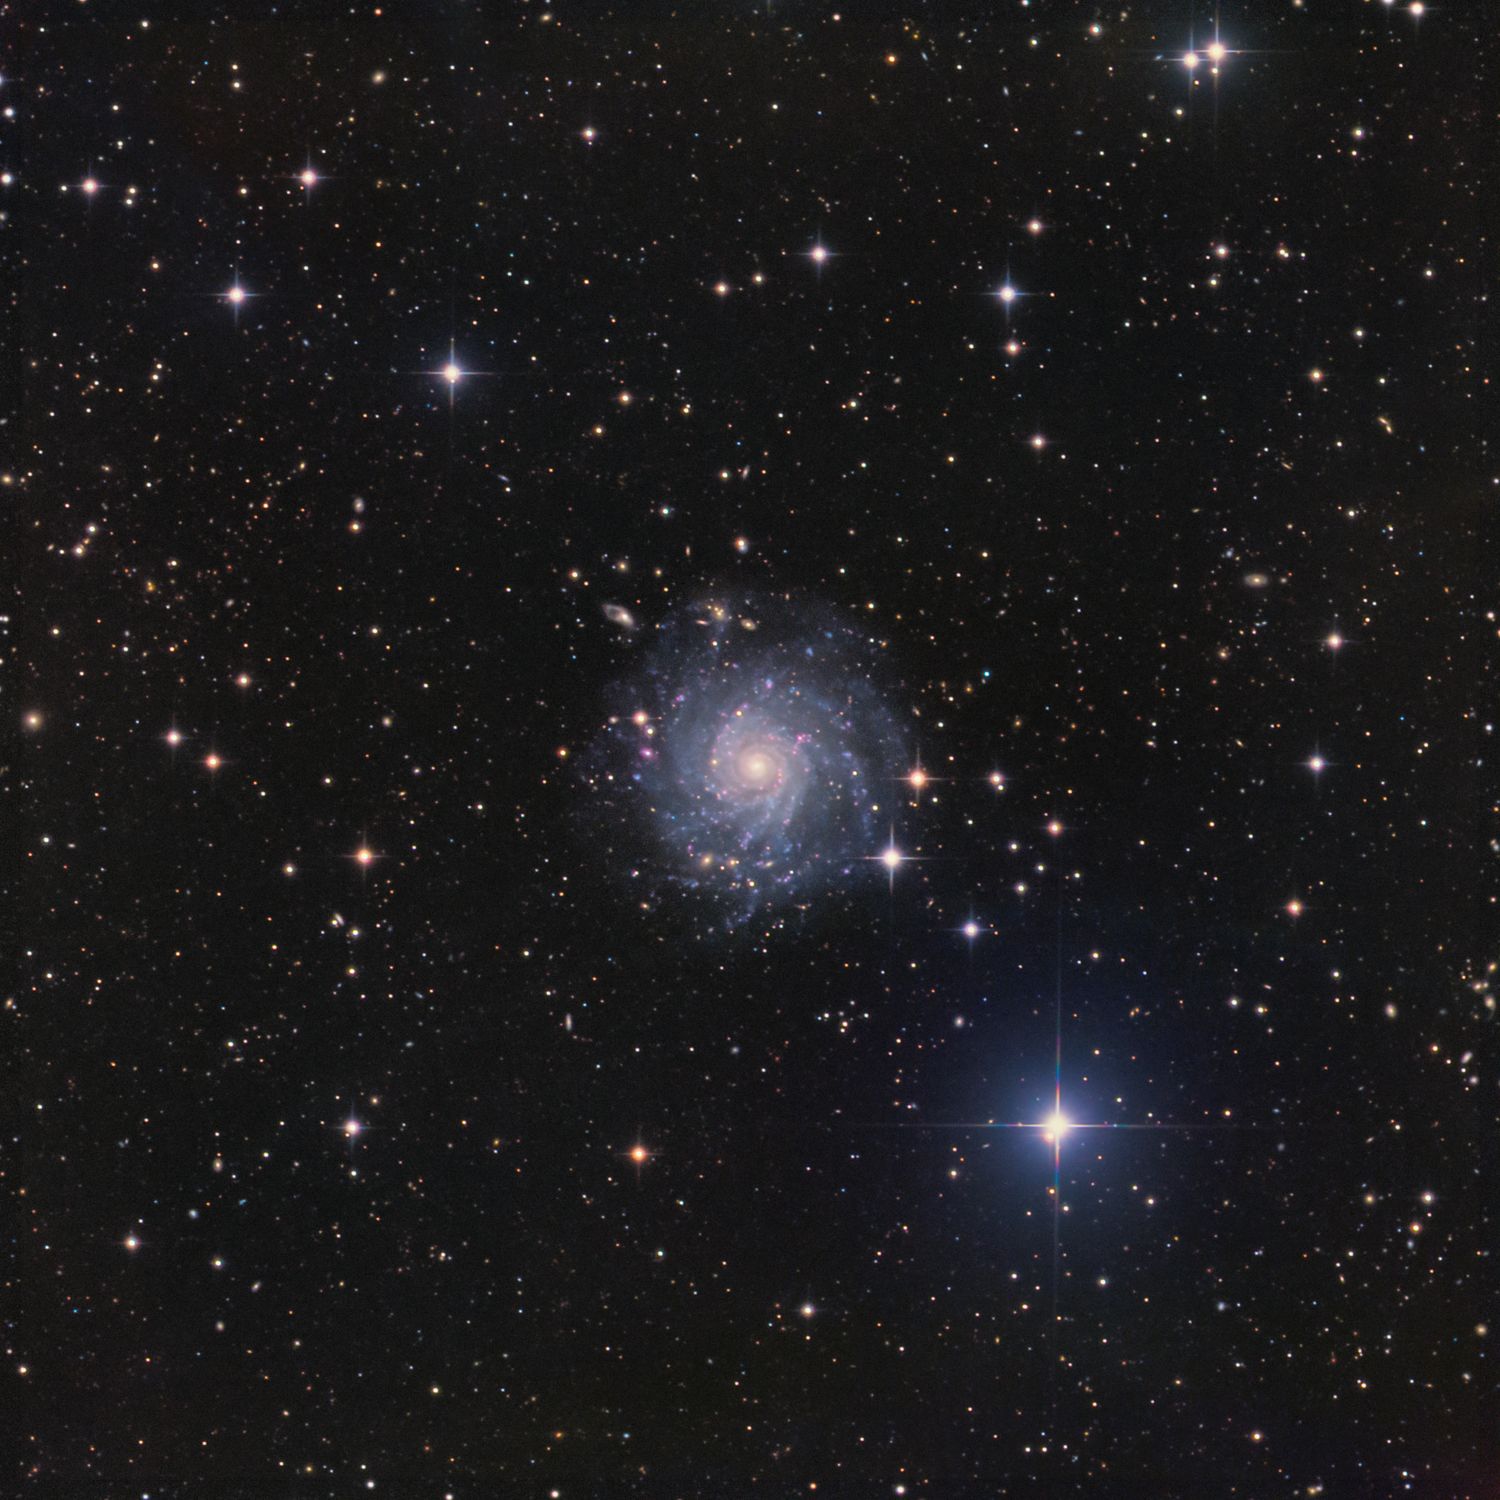 IC 5332 LBHa RHaGB